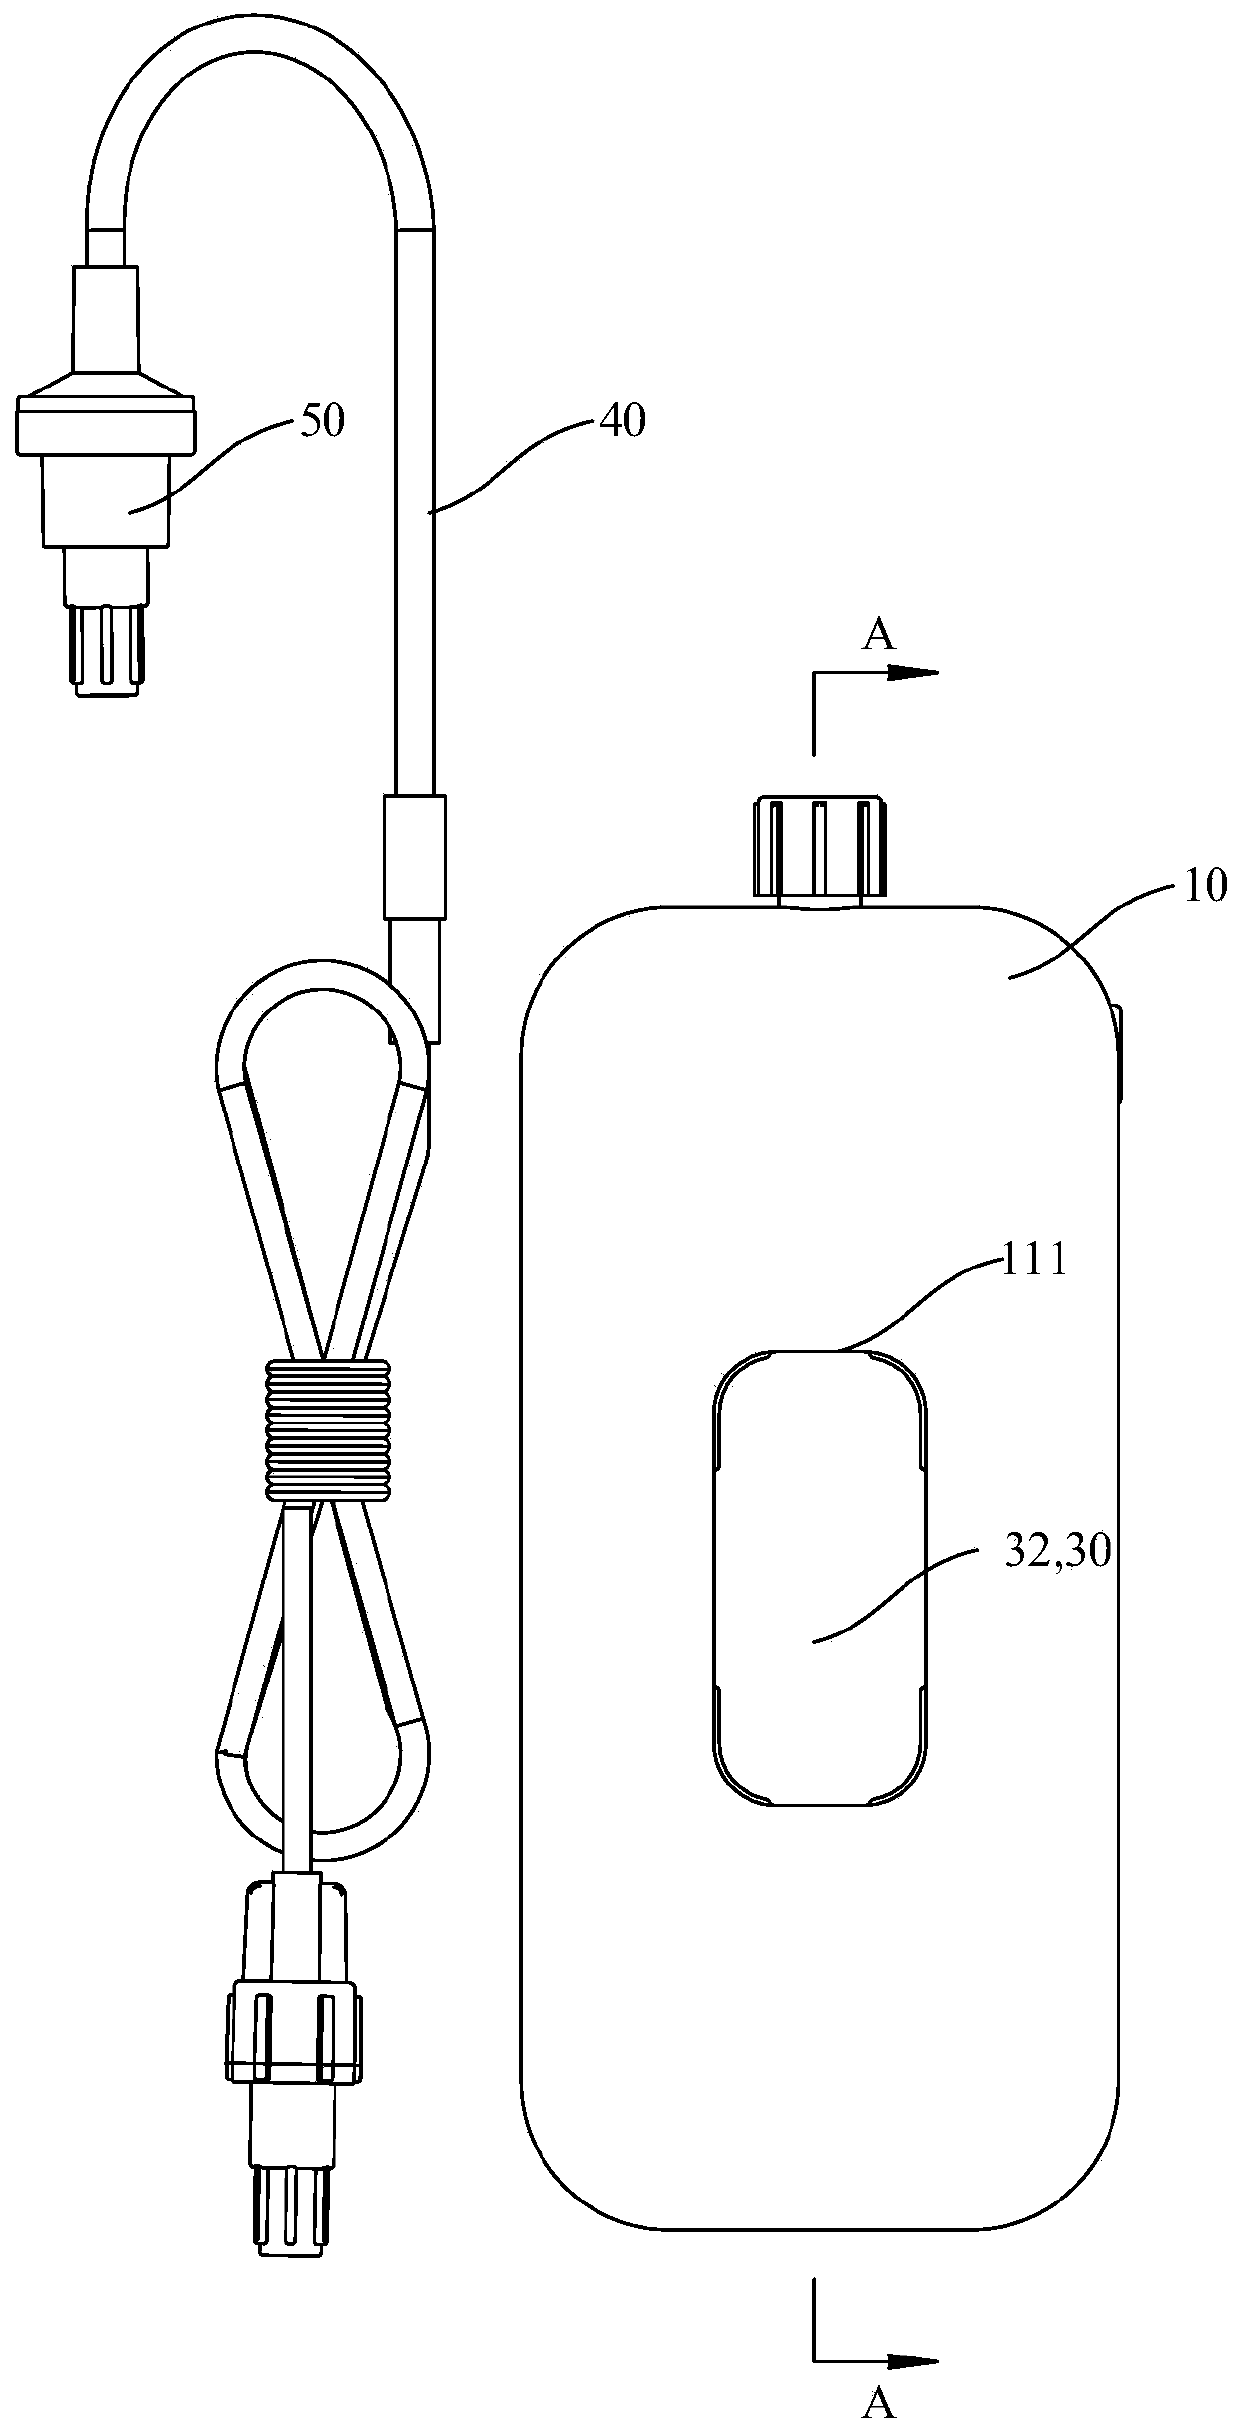 Liquid feeding pump system